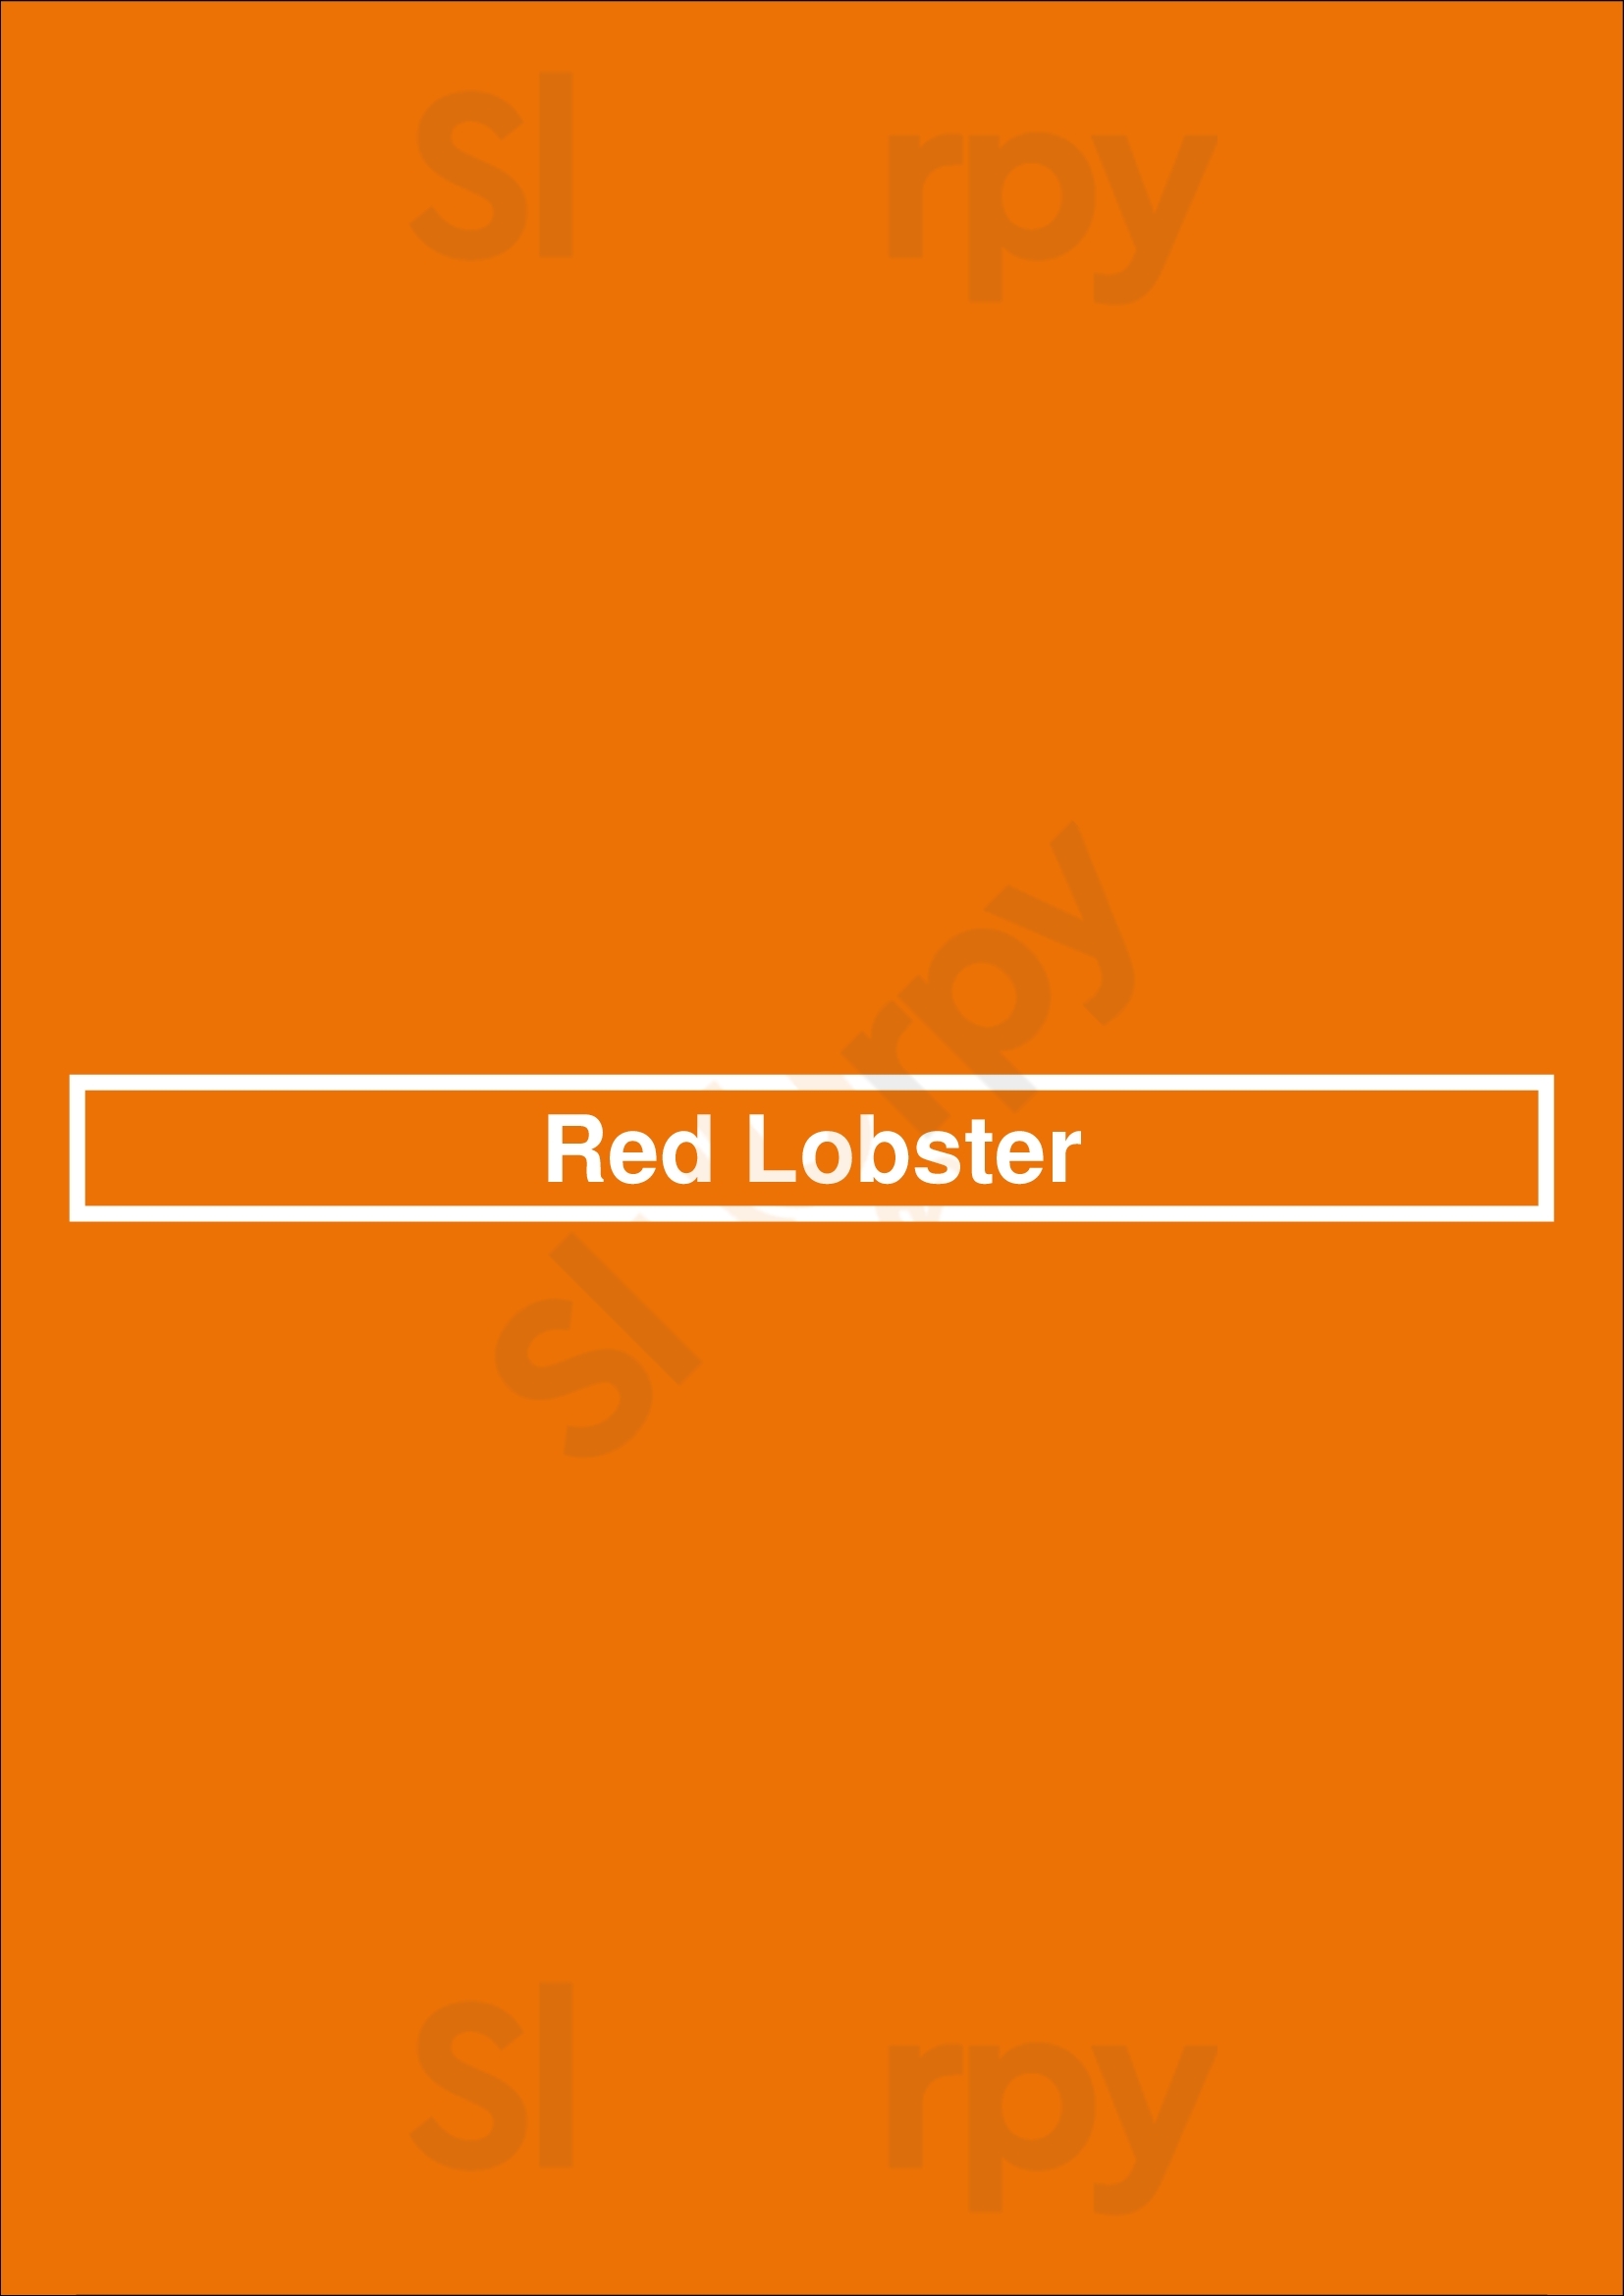 Red Lobster Newark Menu - 1